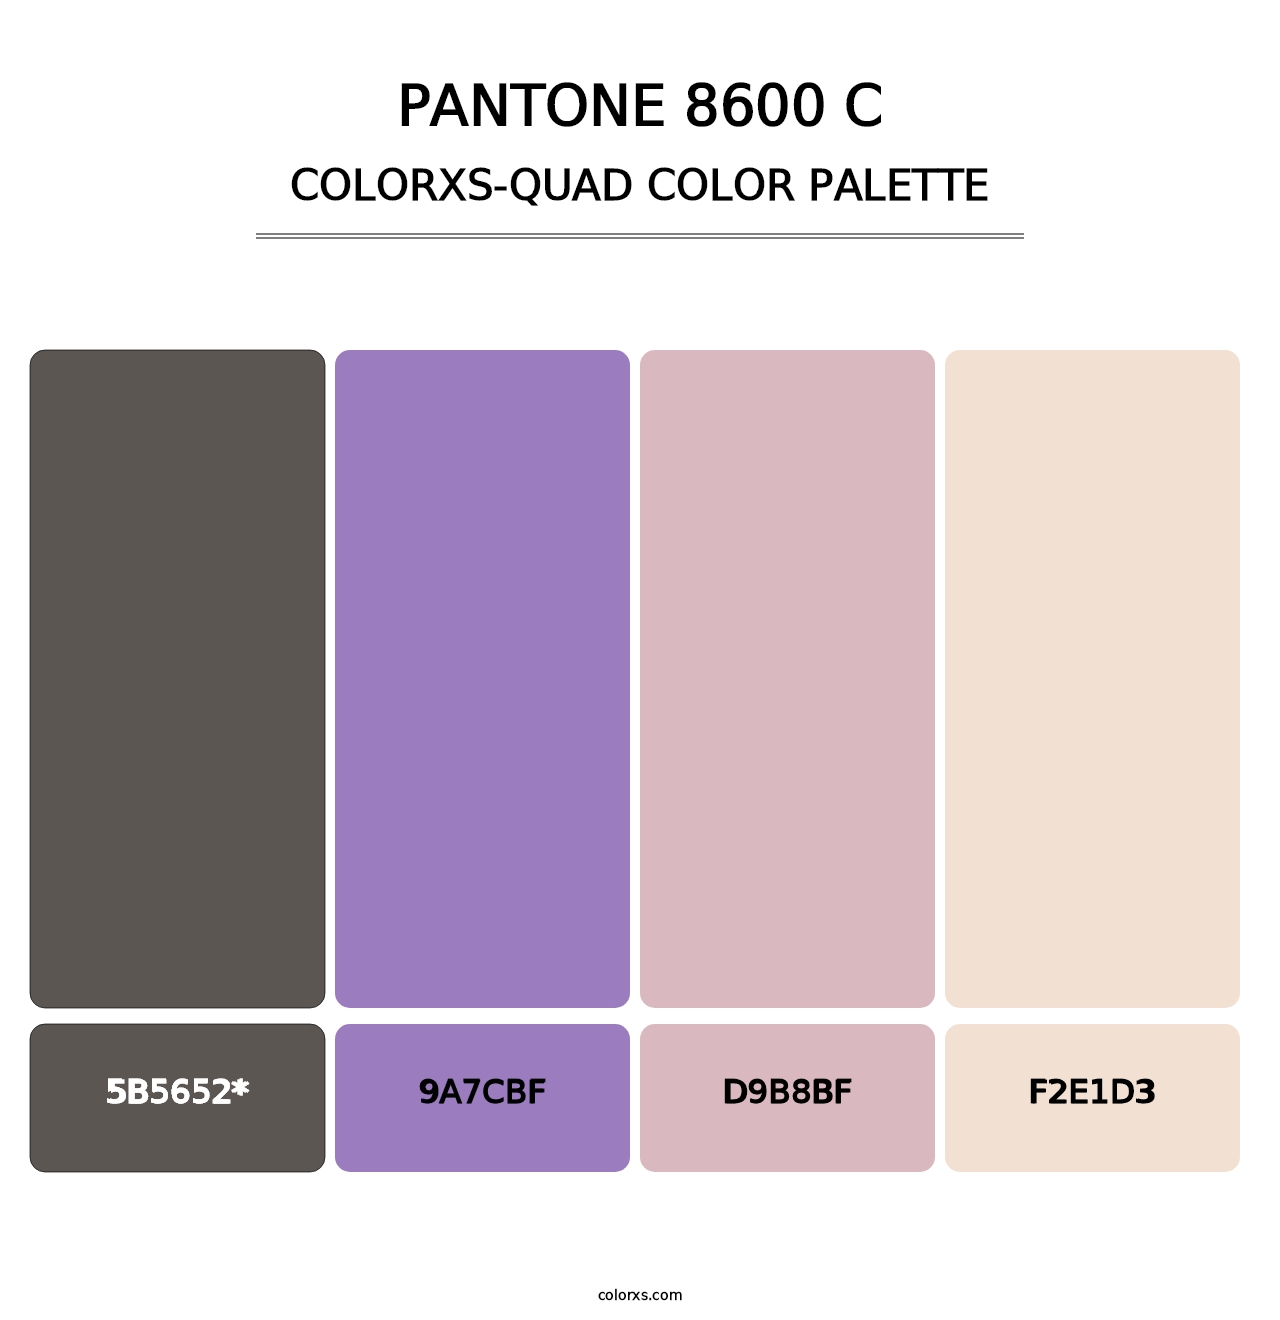 PANTONE 8600 C - Colorxs Quad Palette